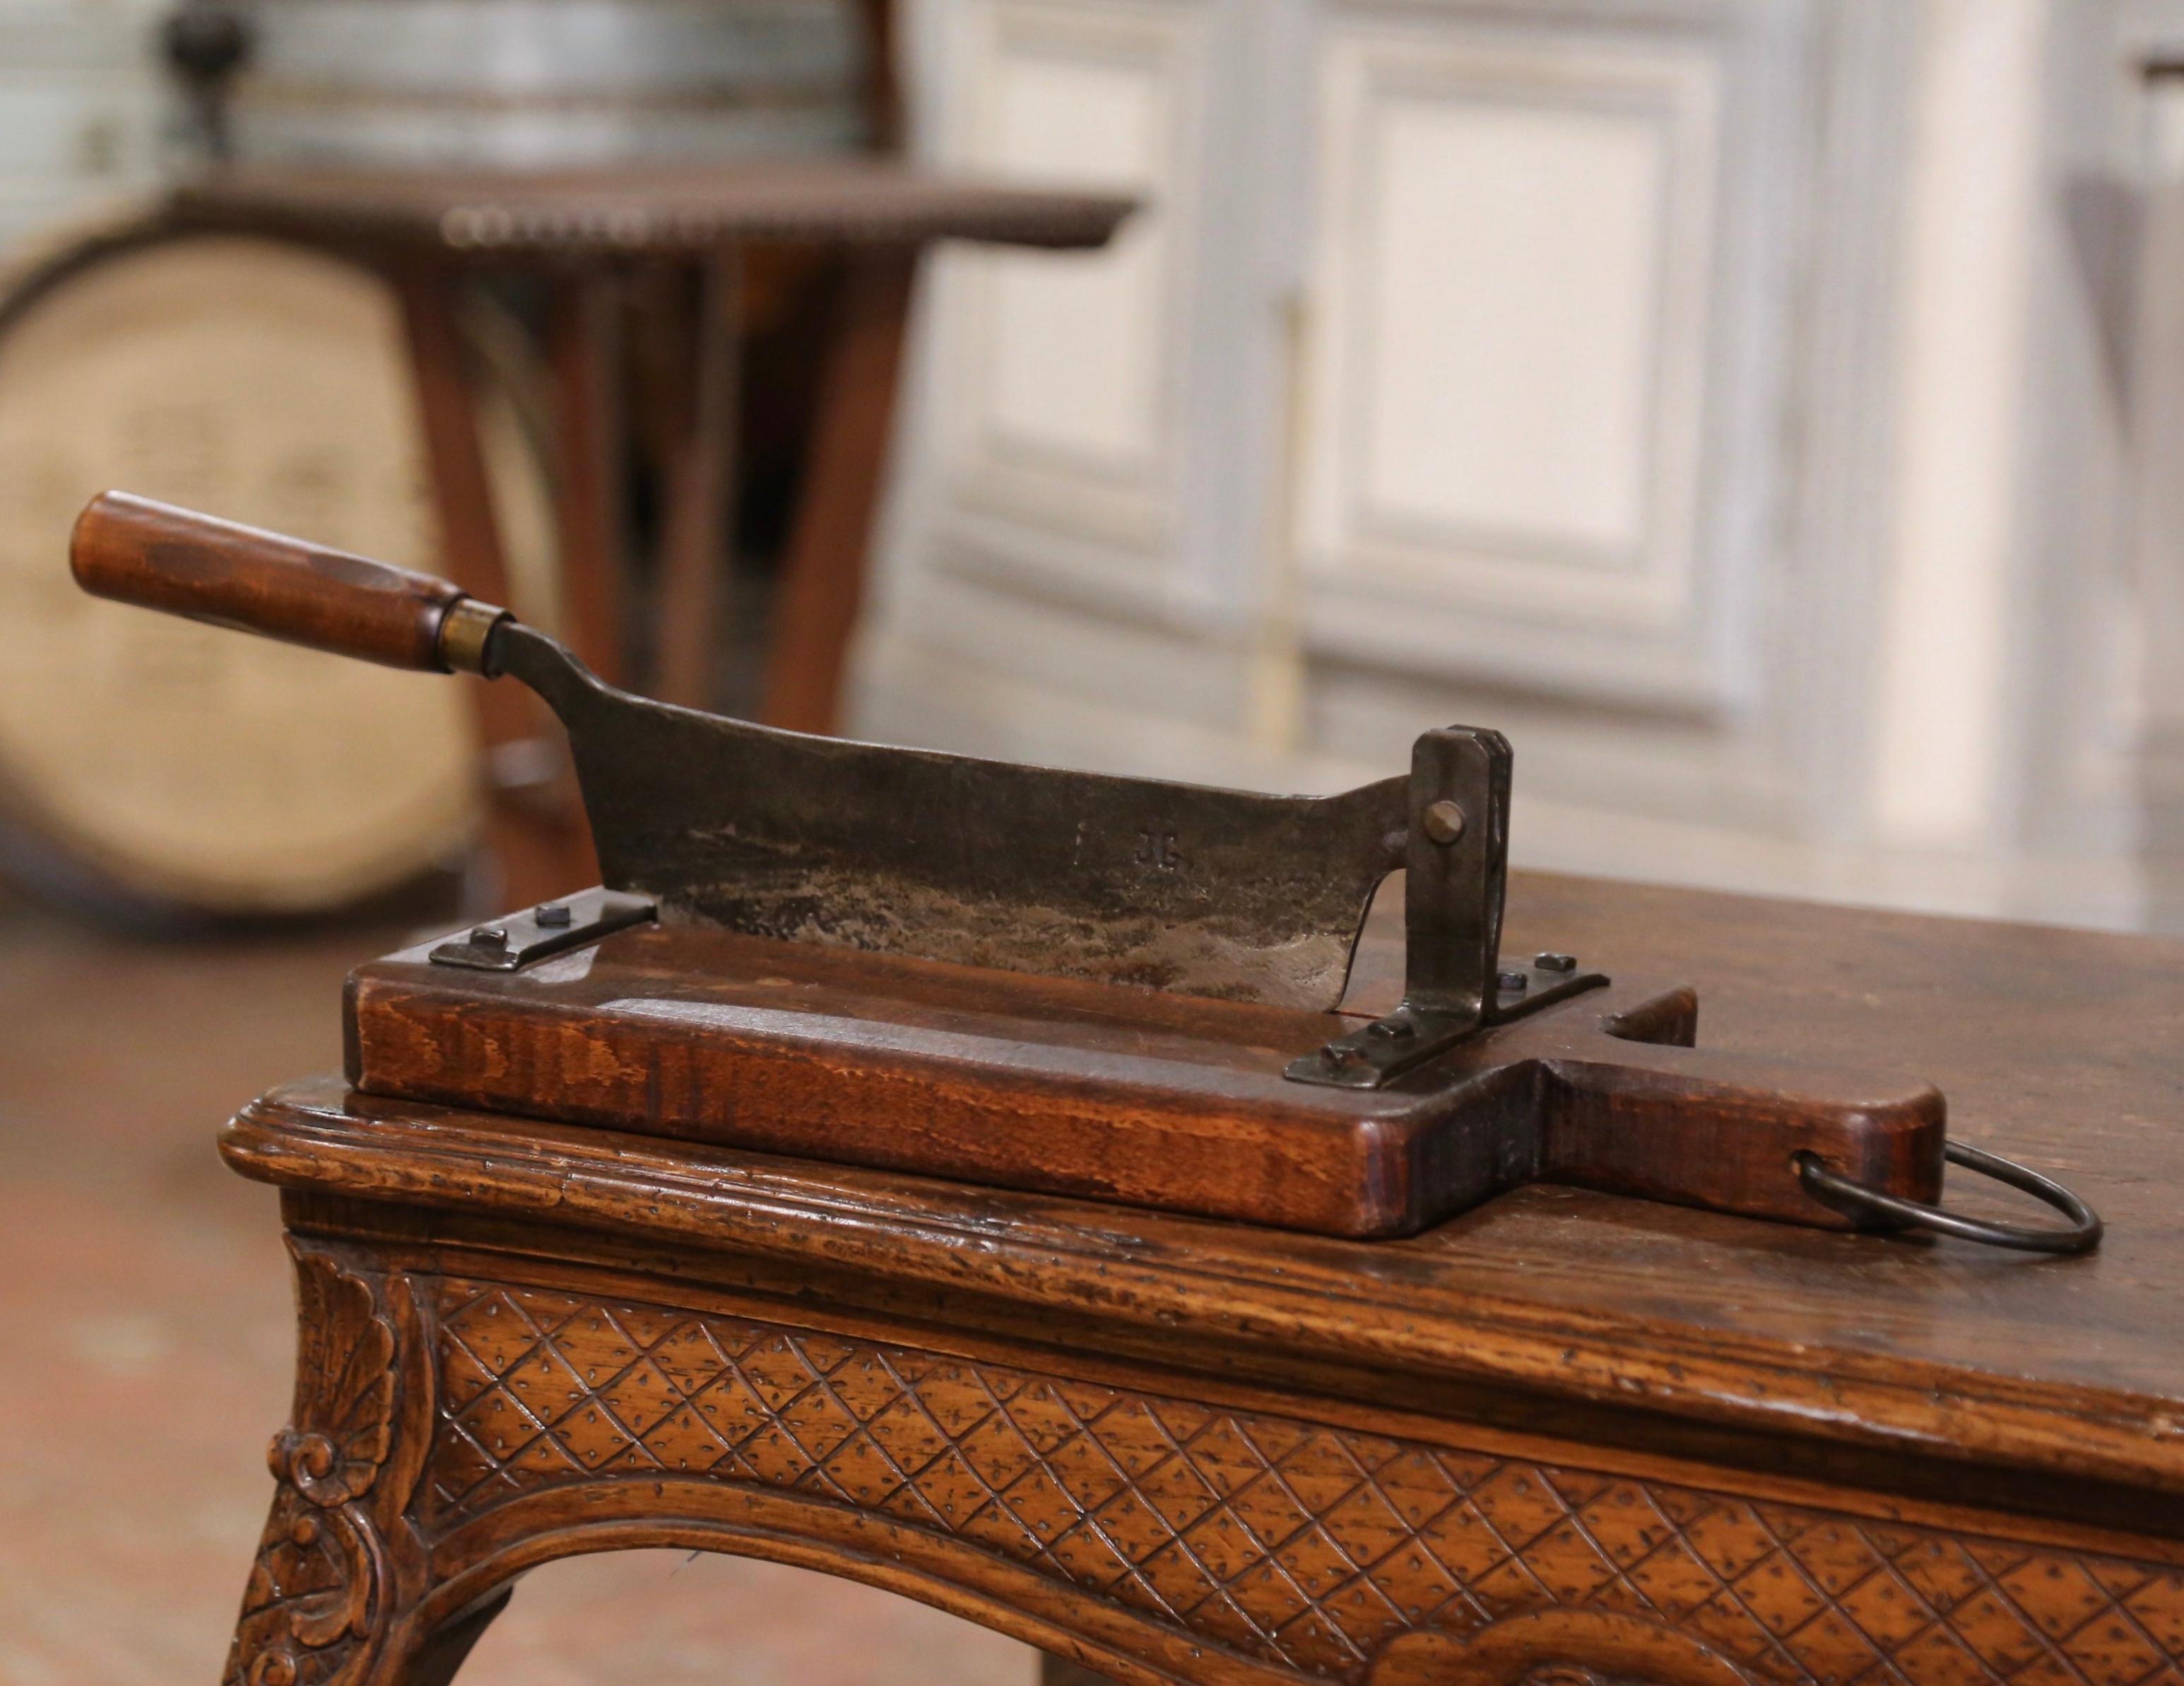 Bringen Sie ein wenig französischen Landhaus-Charme in Ihre Küche mit dieser fein gearbeiteten Brotschneidemaschine mit Holzgriff. Die antike Brotschneidemaschine wurde um 1920 in Frankreich hergestellt und ist sehr einfach und rustikal. Das